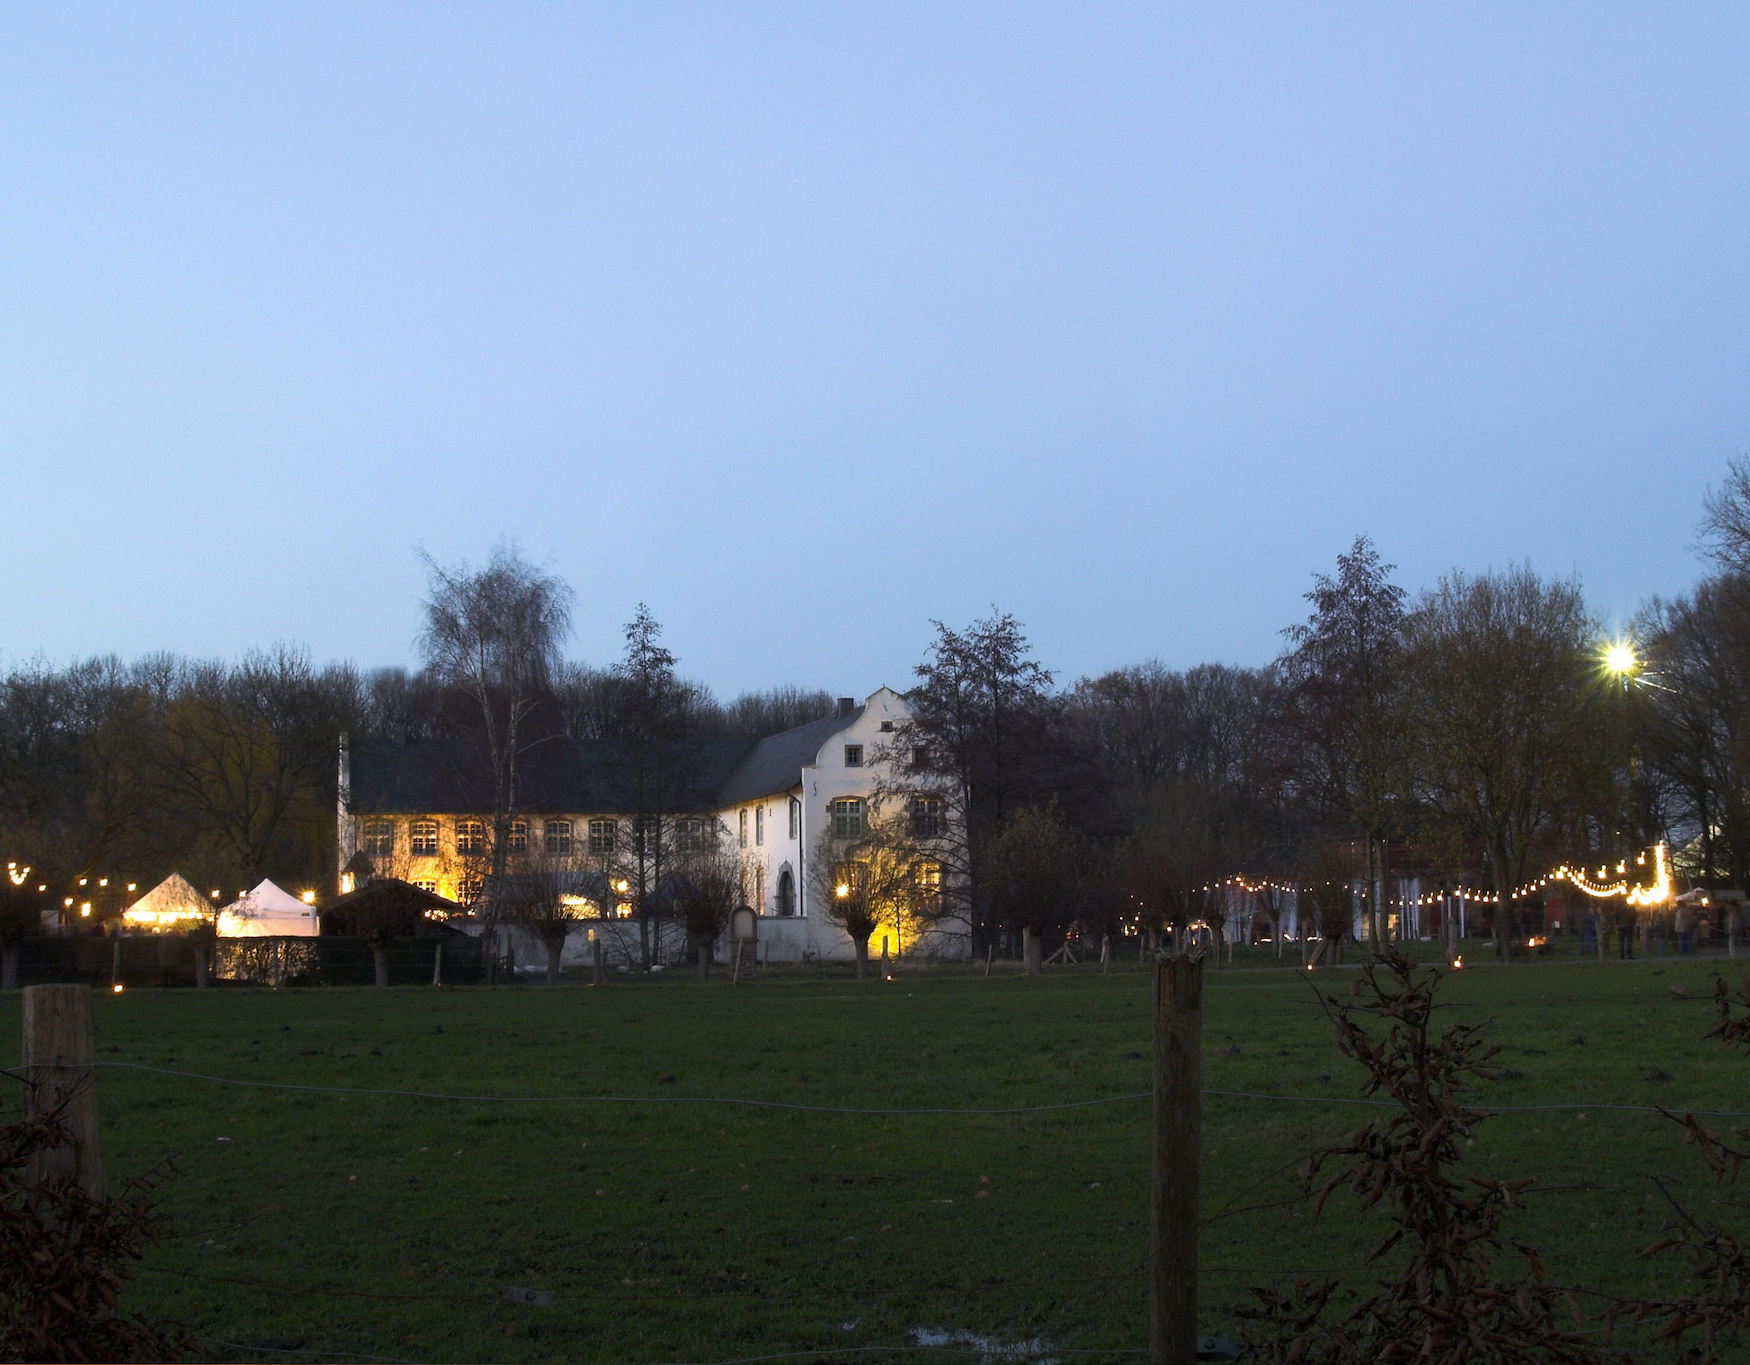 Blick auf das mit Lichtern geschmückte Wasserschloss Dorenburg in Grefrath.